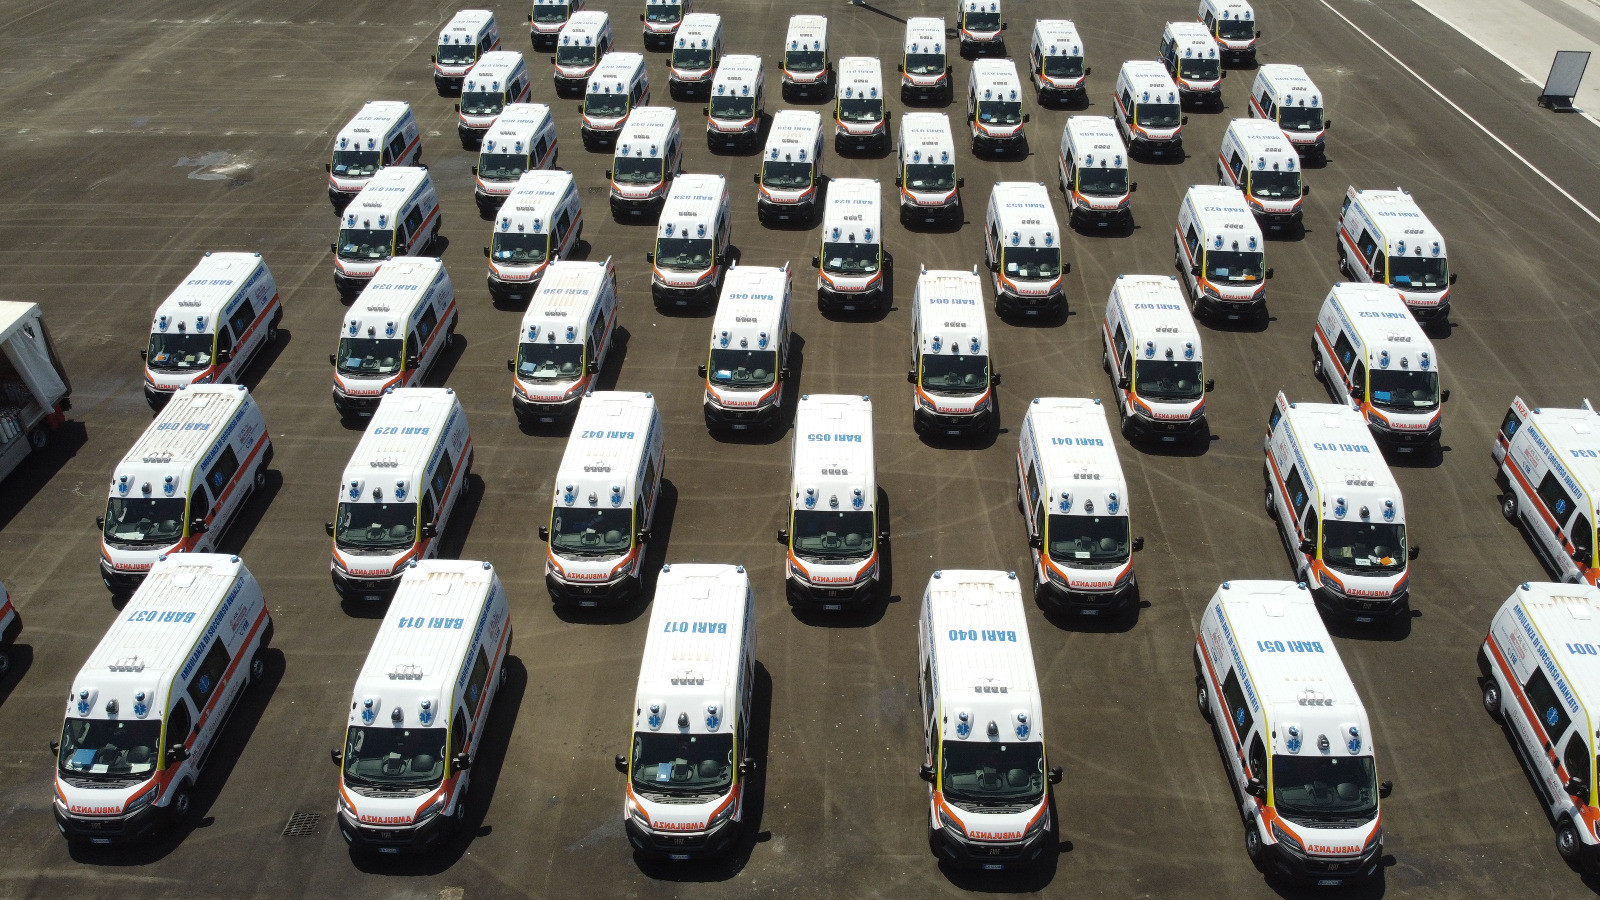 Galleria Il 118 ASL Bari cambia volto: ecco 55 nuove ambulanze  e 462 operatori assunti a tempo indeterminato in Sanitaservice - Diapositiva 7 di 21